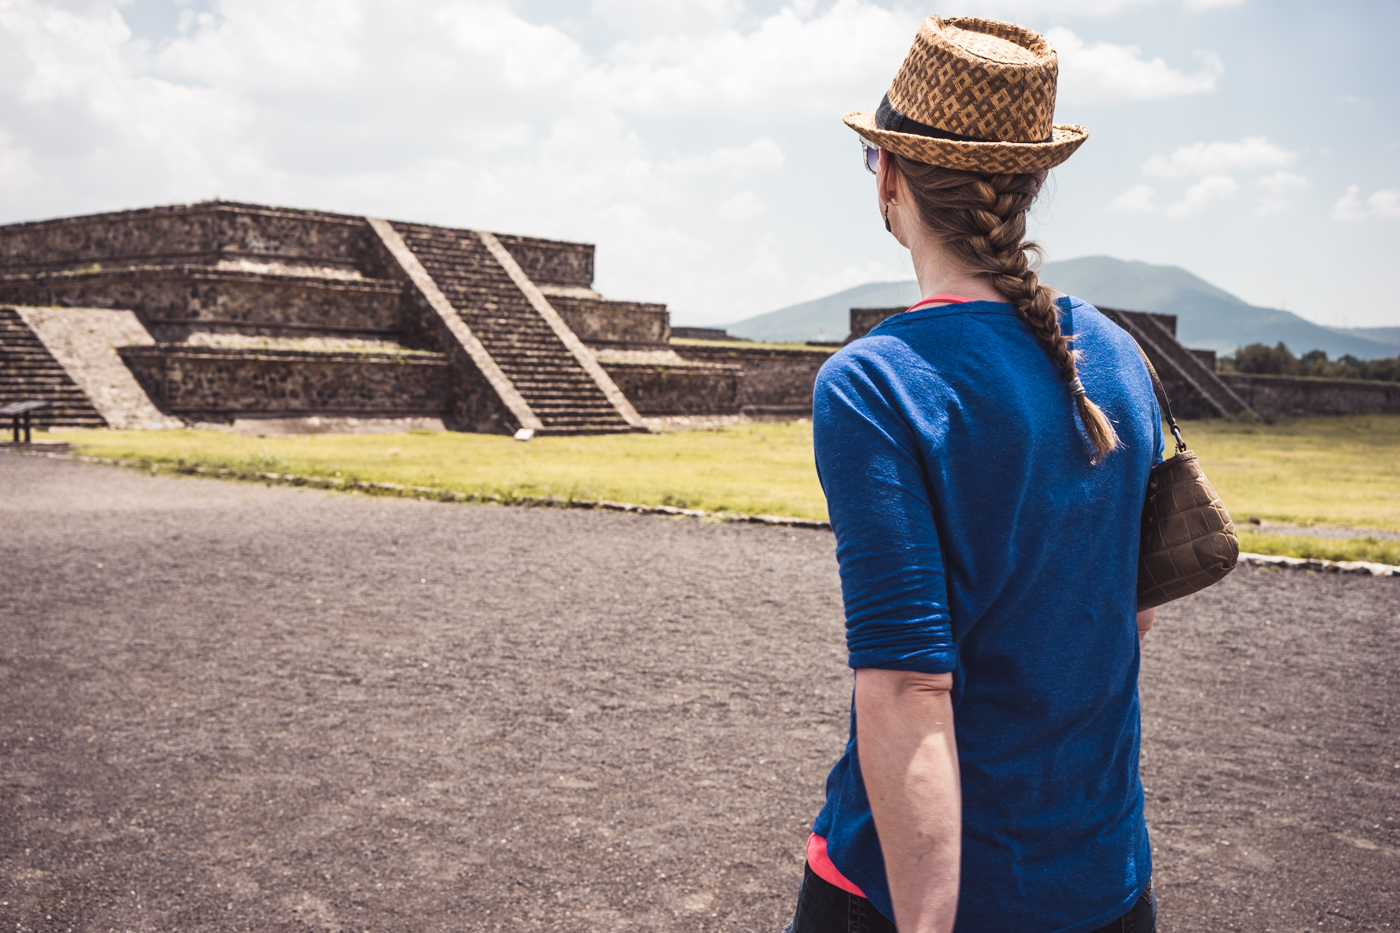 La Ciudadela at Zona Arqueológica in Teotihuacán